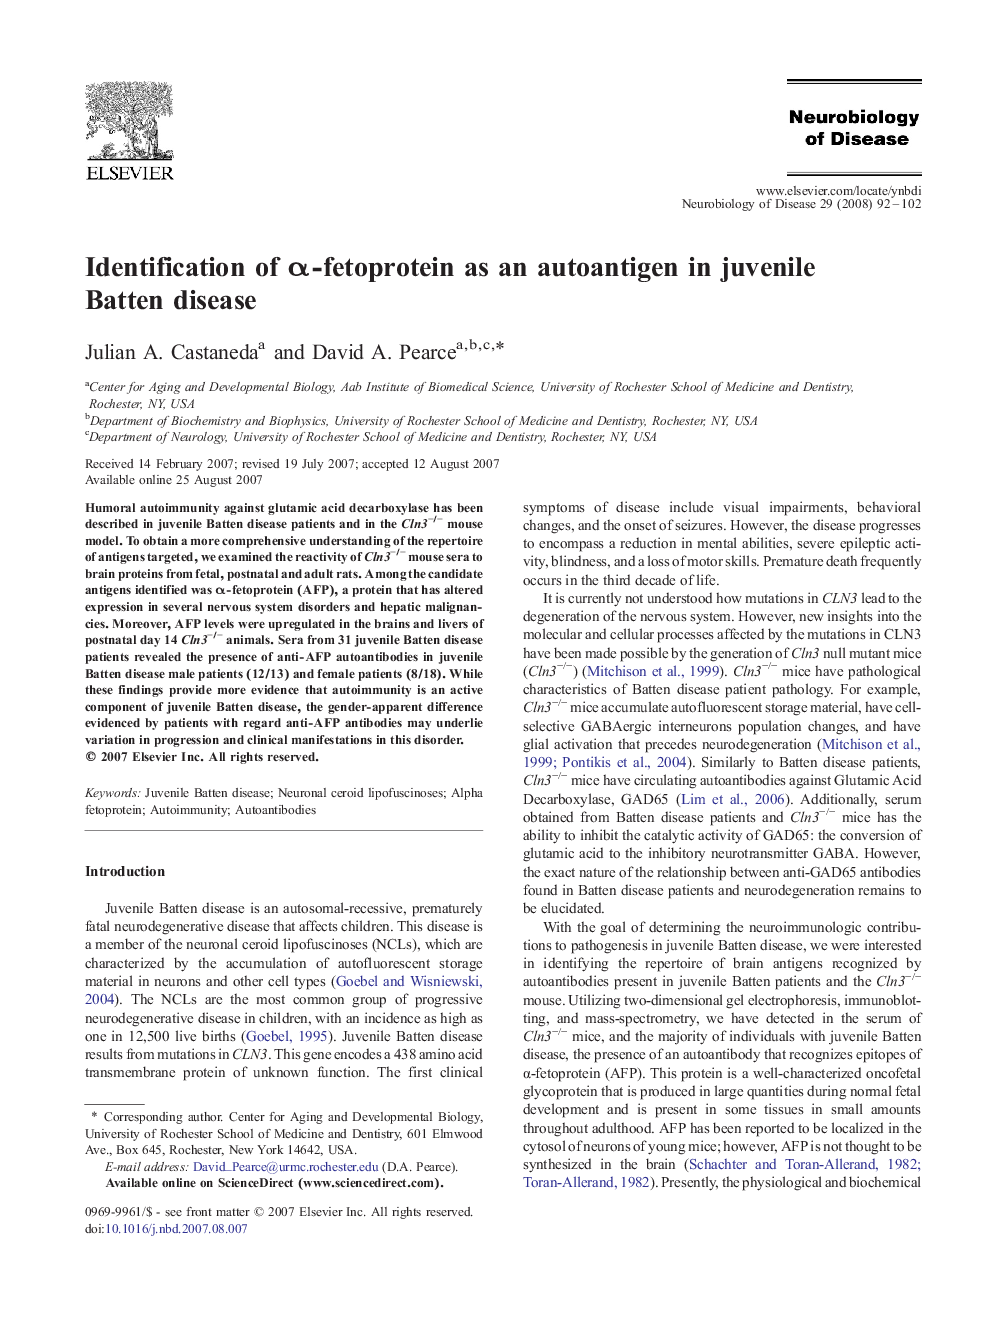 Identification of α-fetoprotein as an autoantigen in juvenile Batten disease